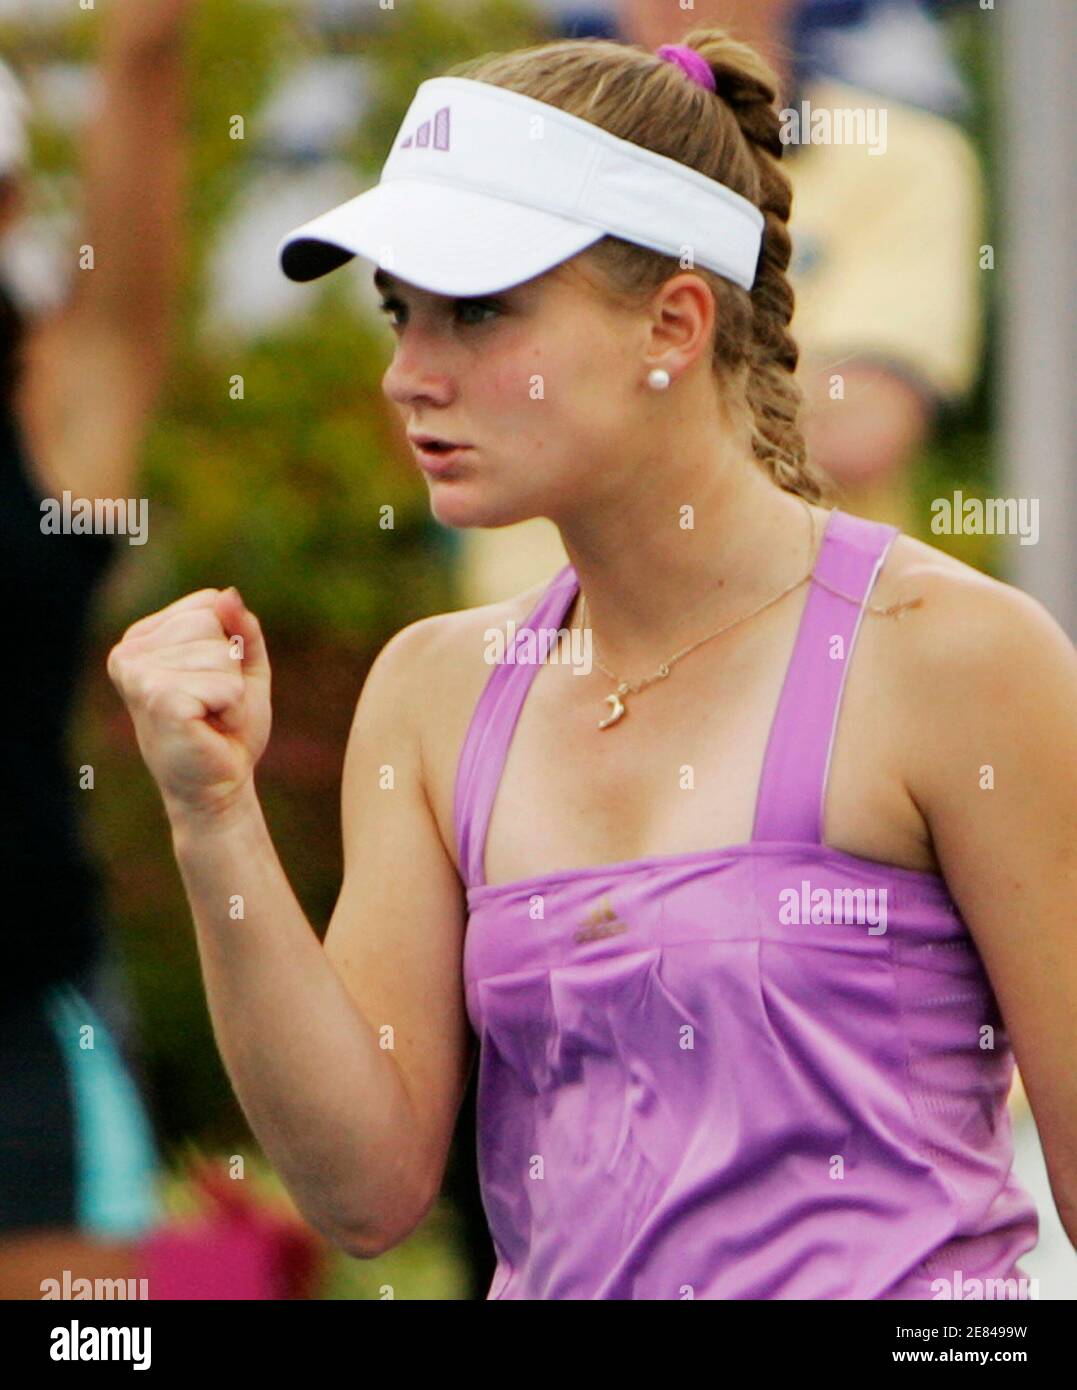 Anna Chakvetadze Russlands reagiert nach dem Sieg gegen Vania King von den USA in ihrer Fed-Cup-Tennis Halbfinale Unentschieden in Stowe, Vermont, 14. Juli 2007.   REUTERS/Brian Snyder (USA) Stockfoto